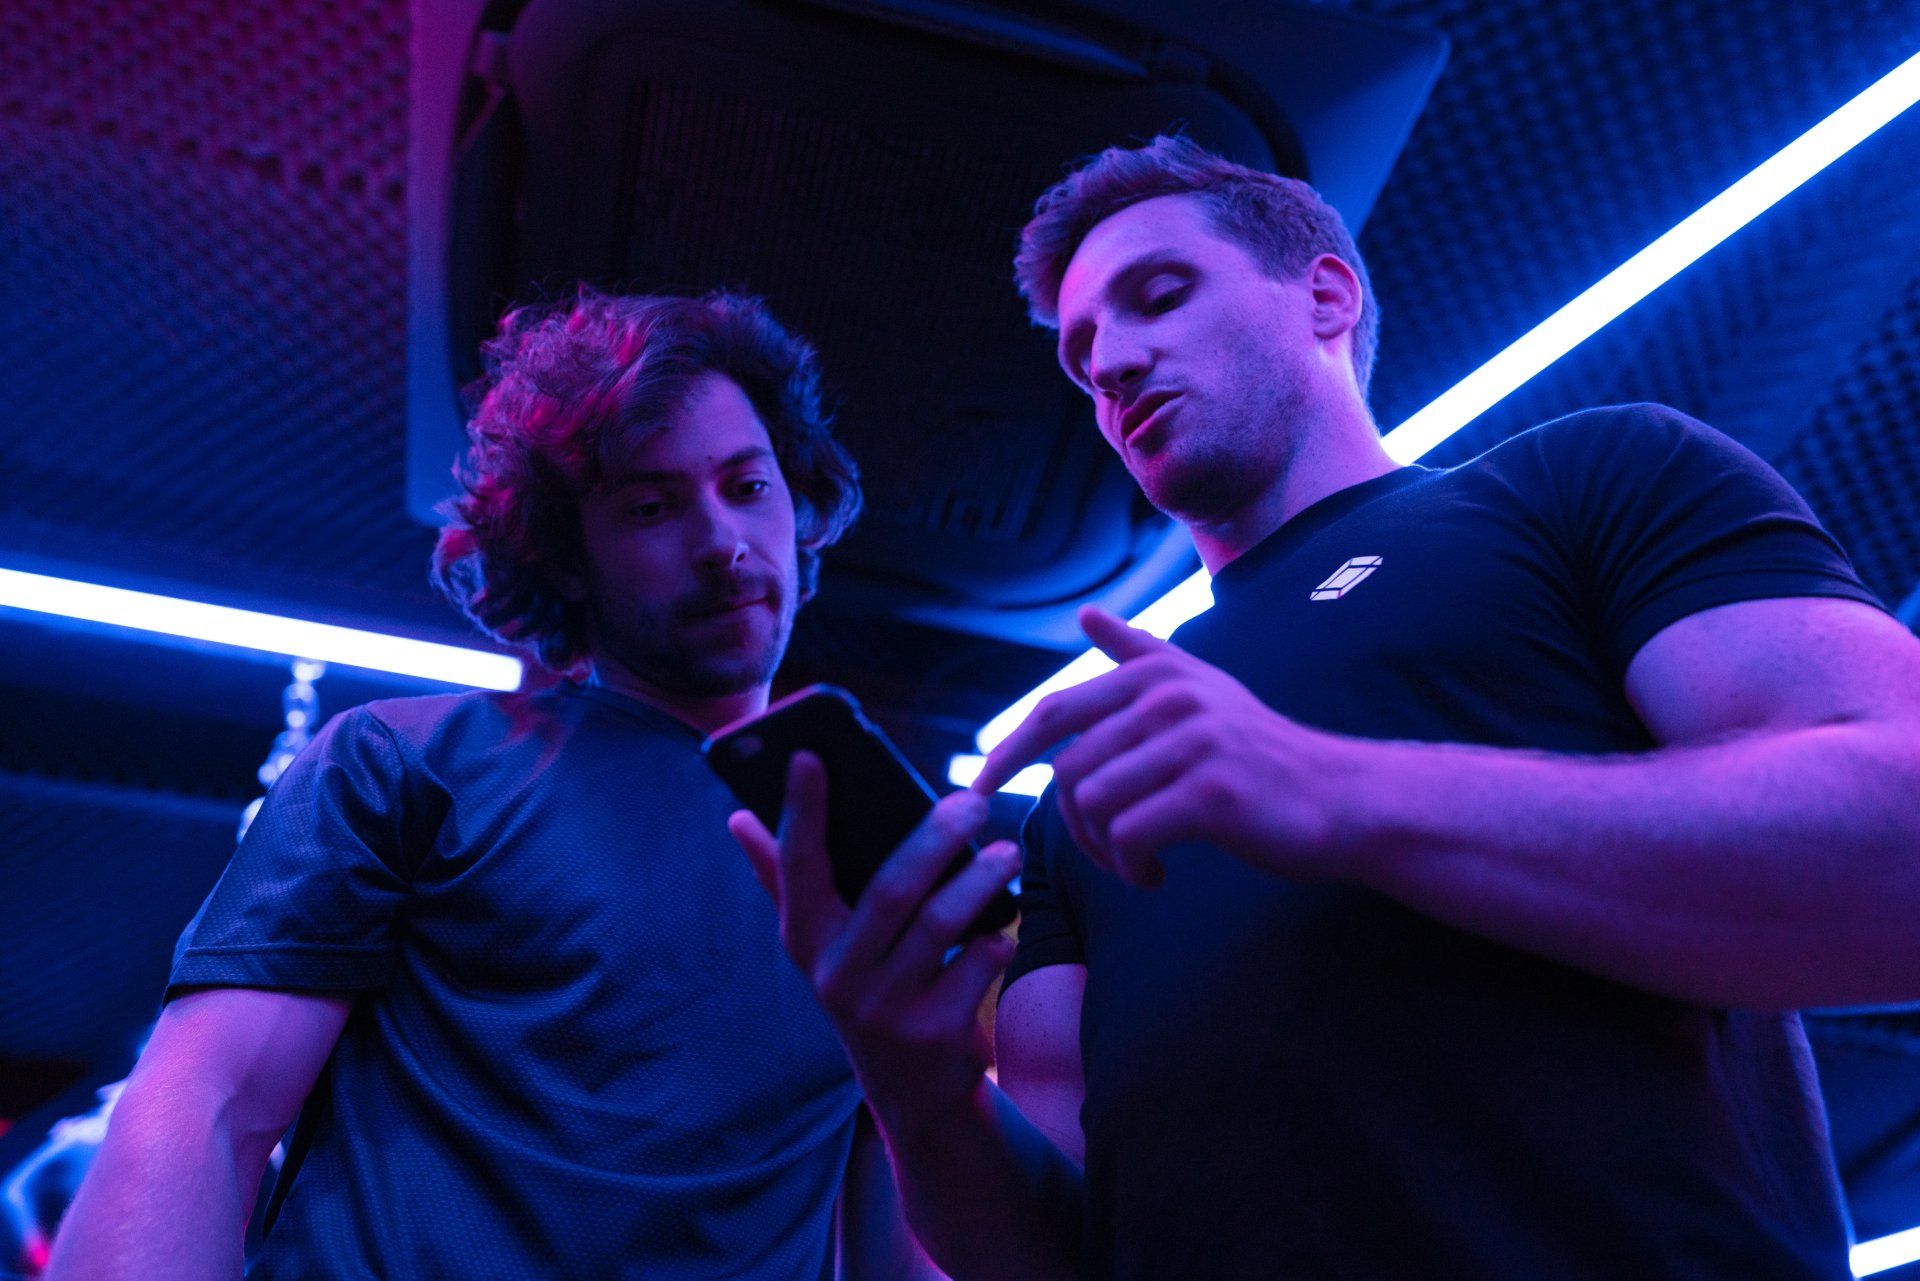 Zwei Männer schauen in einem dunklen Raum auf ein Handy.